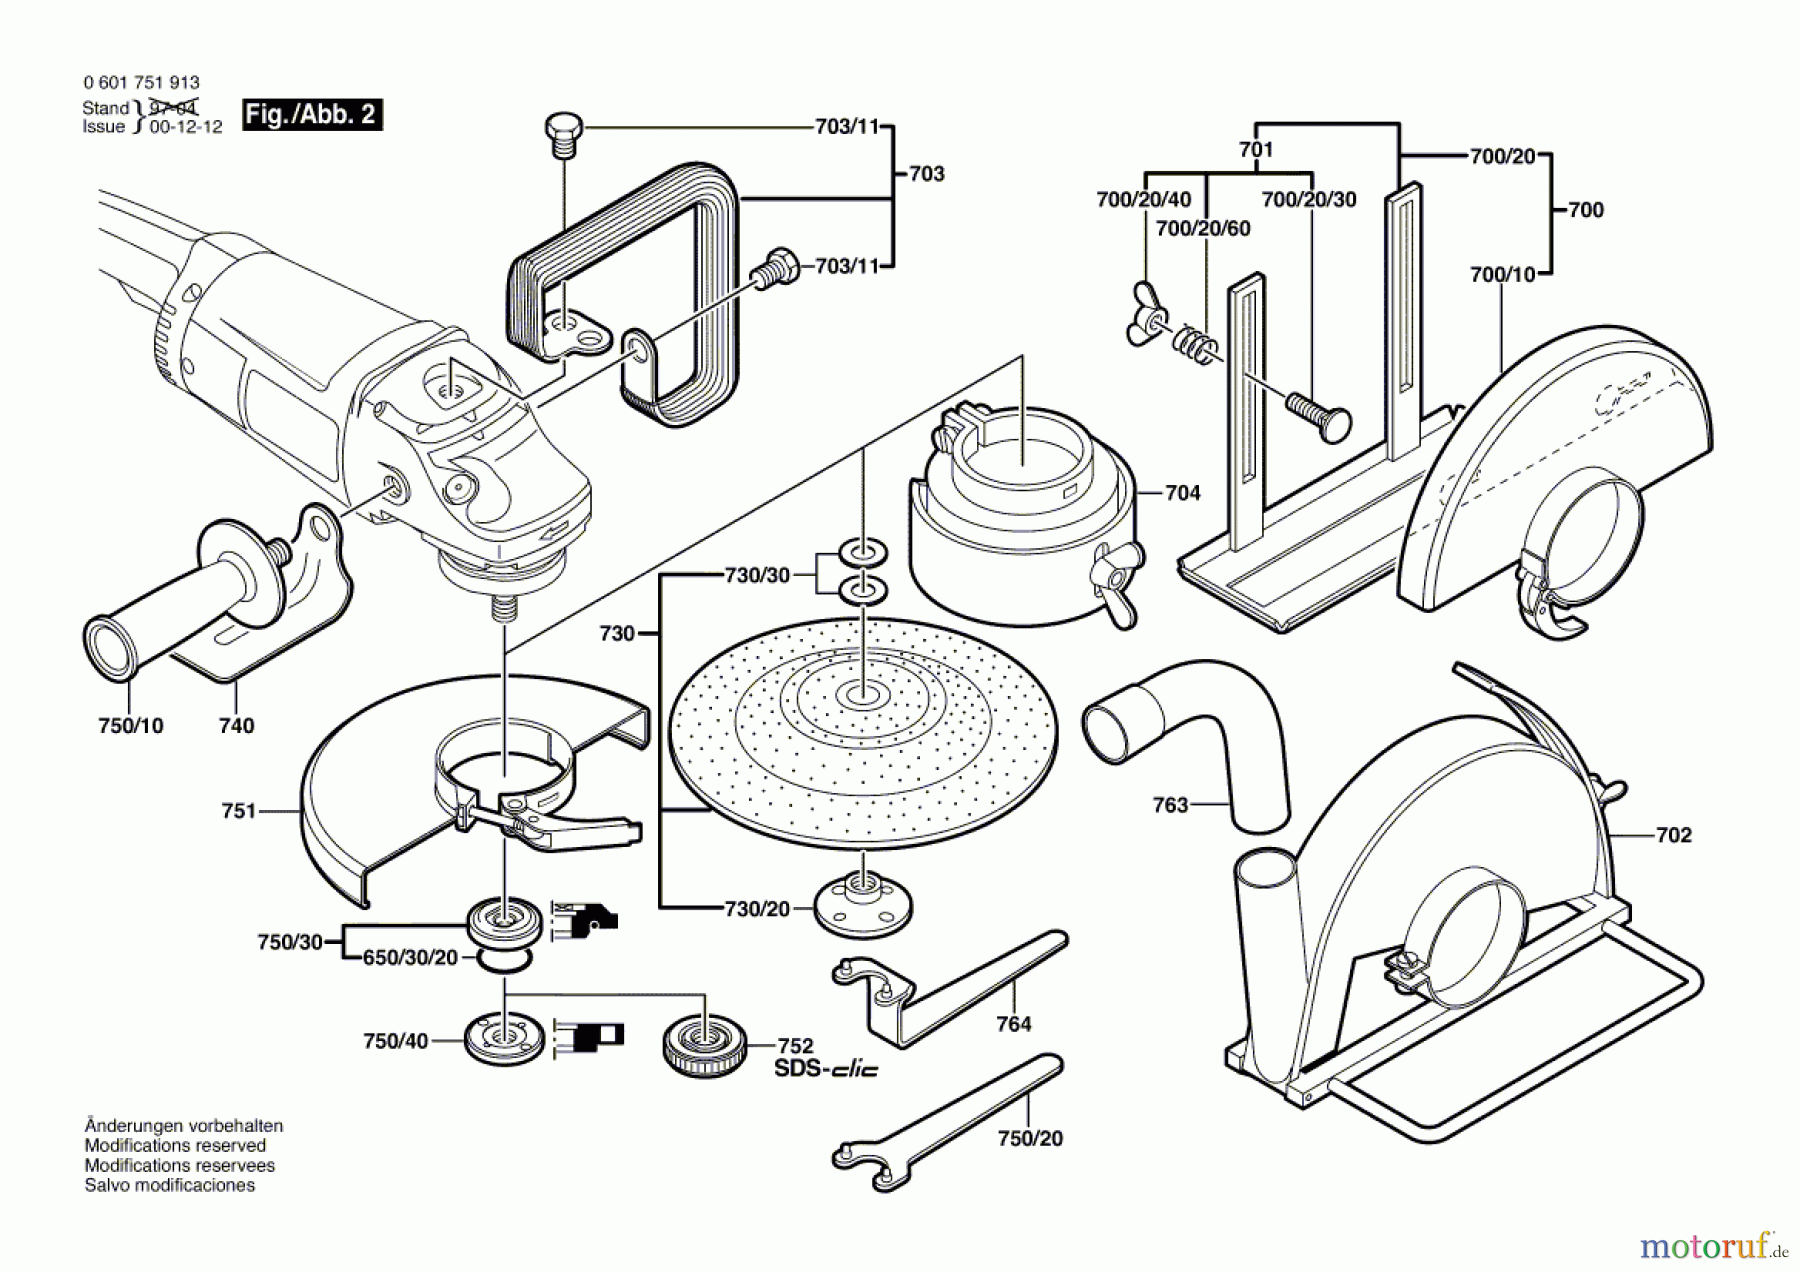  Bosch Werkzeug Winkelschleifer GWS 20-180 J Seite 2